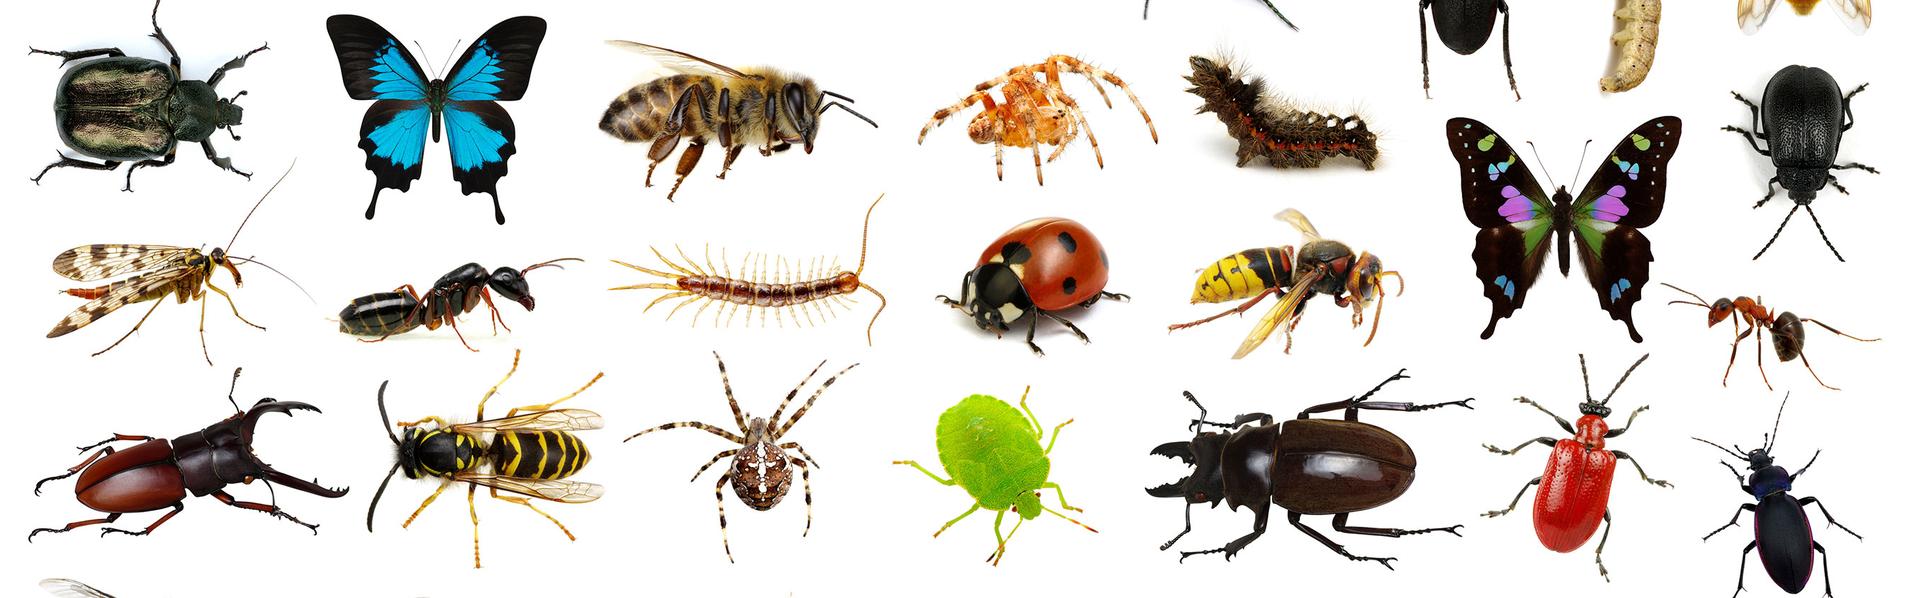 Le dossier sur les insectes de RTS Découverte [depositphotos - Ale-ks]